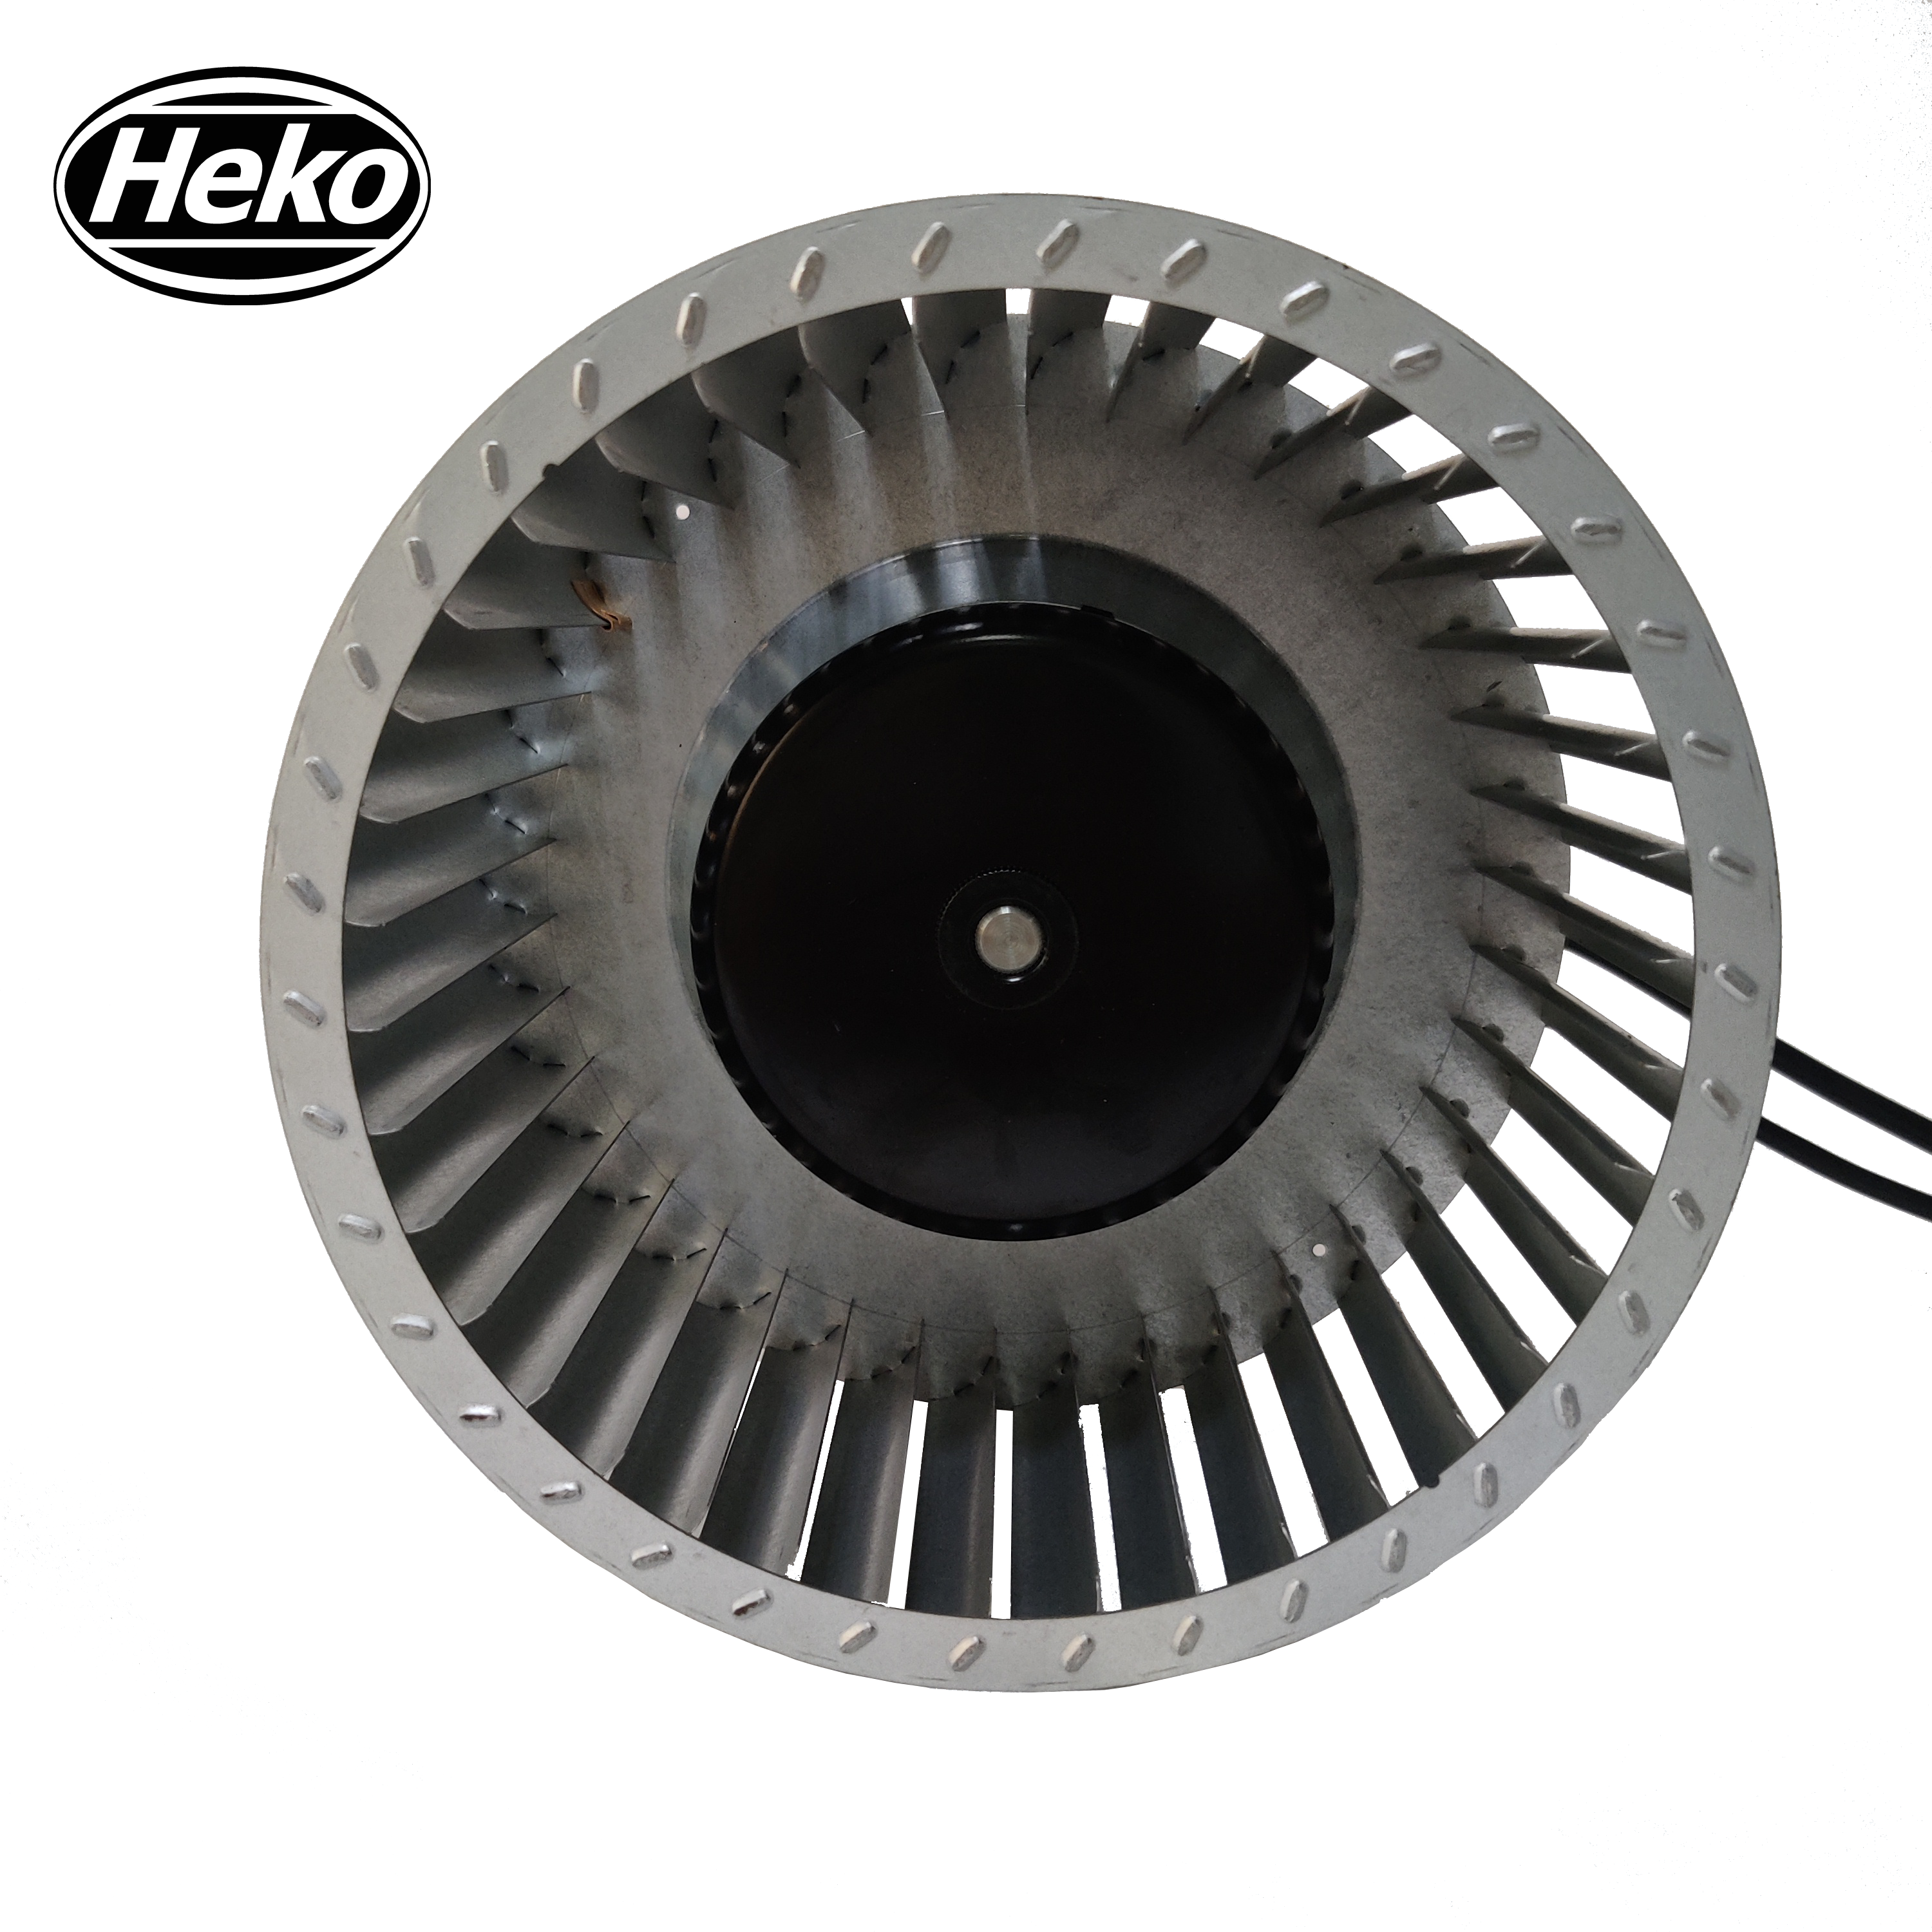 HEKO EC180mm High Speed Centrifugal Fan For Bathroom